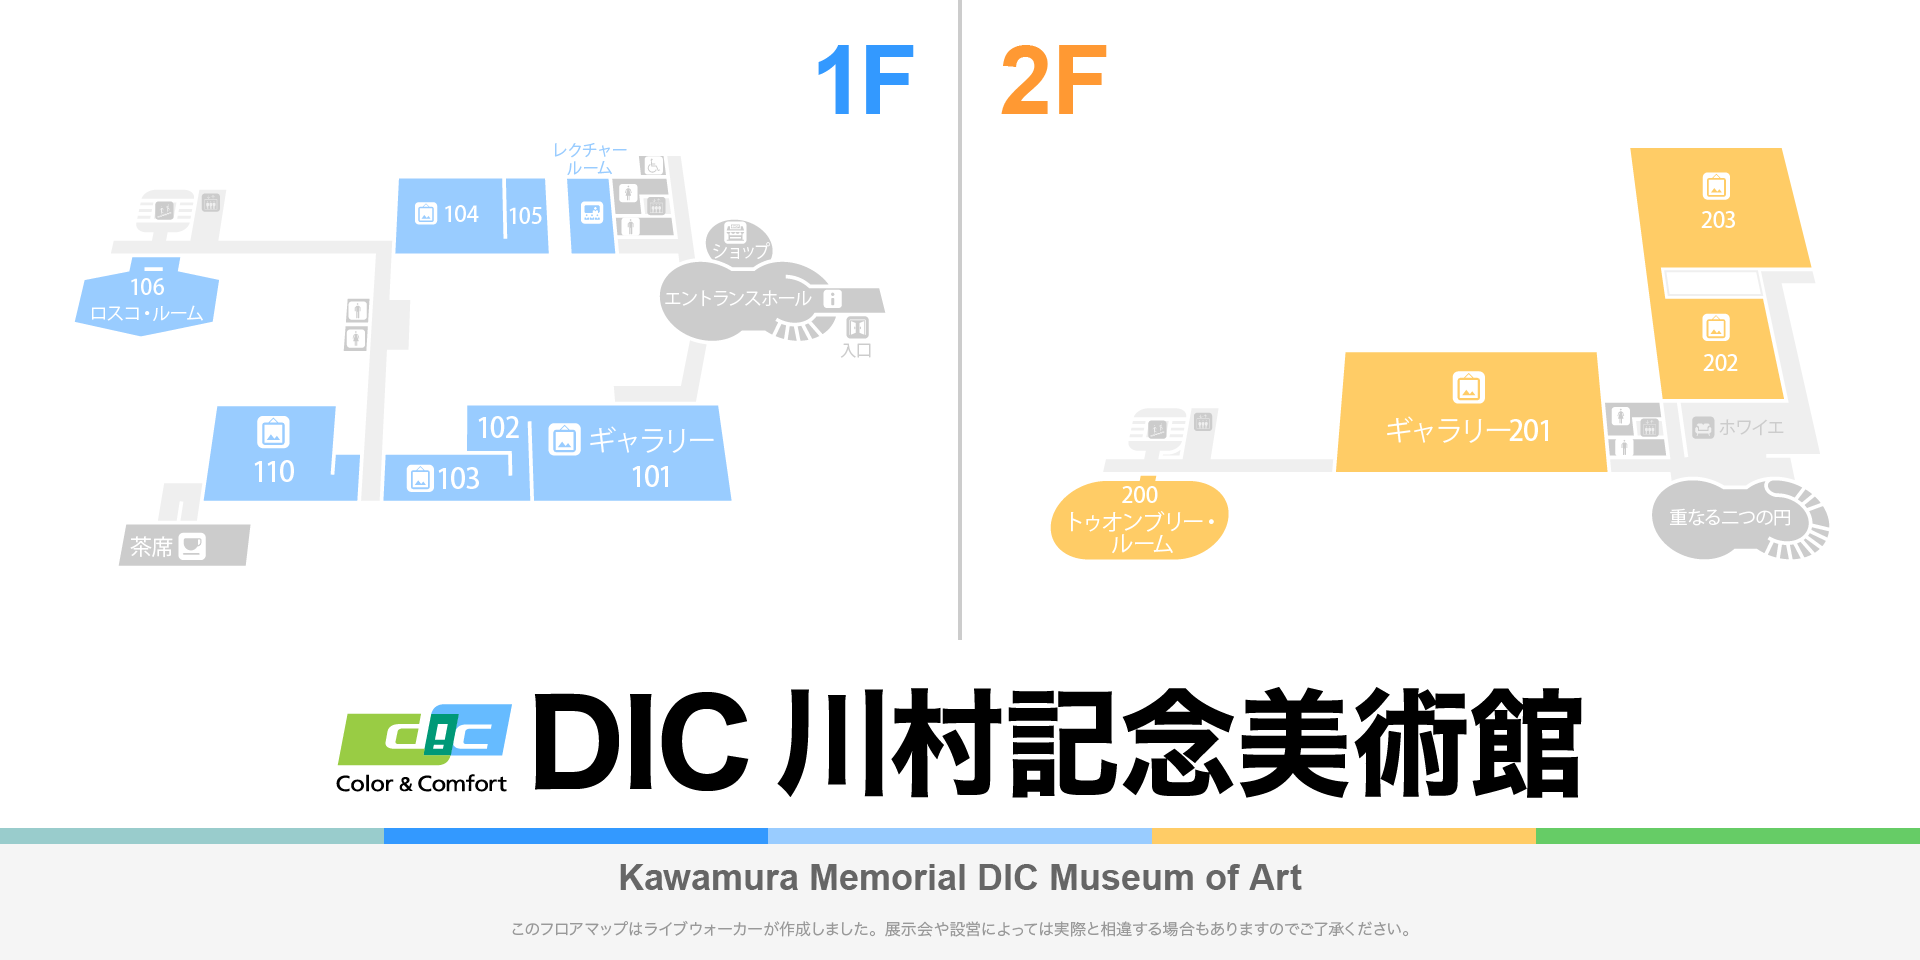 DIC川村記念美術館のフロアマップ